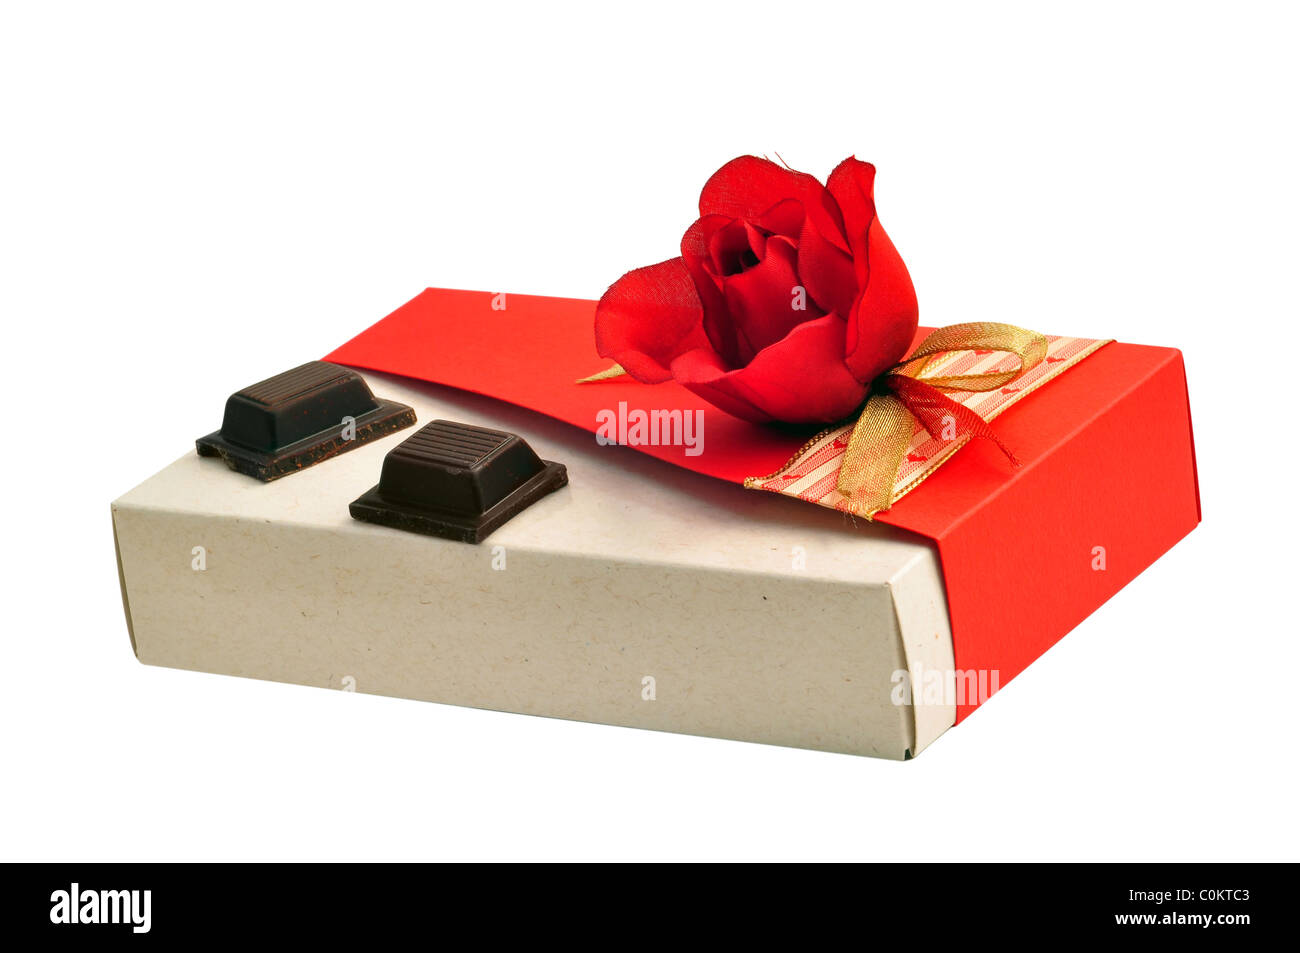 Valentine's day gift : tissu rose rouge boîte cadeau en carton recyclé avec deux morceaux de chocolat délicieux Banque D'Images